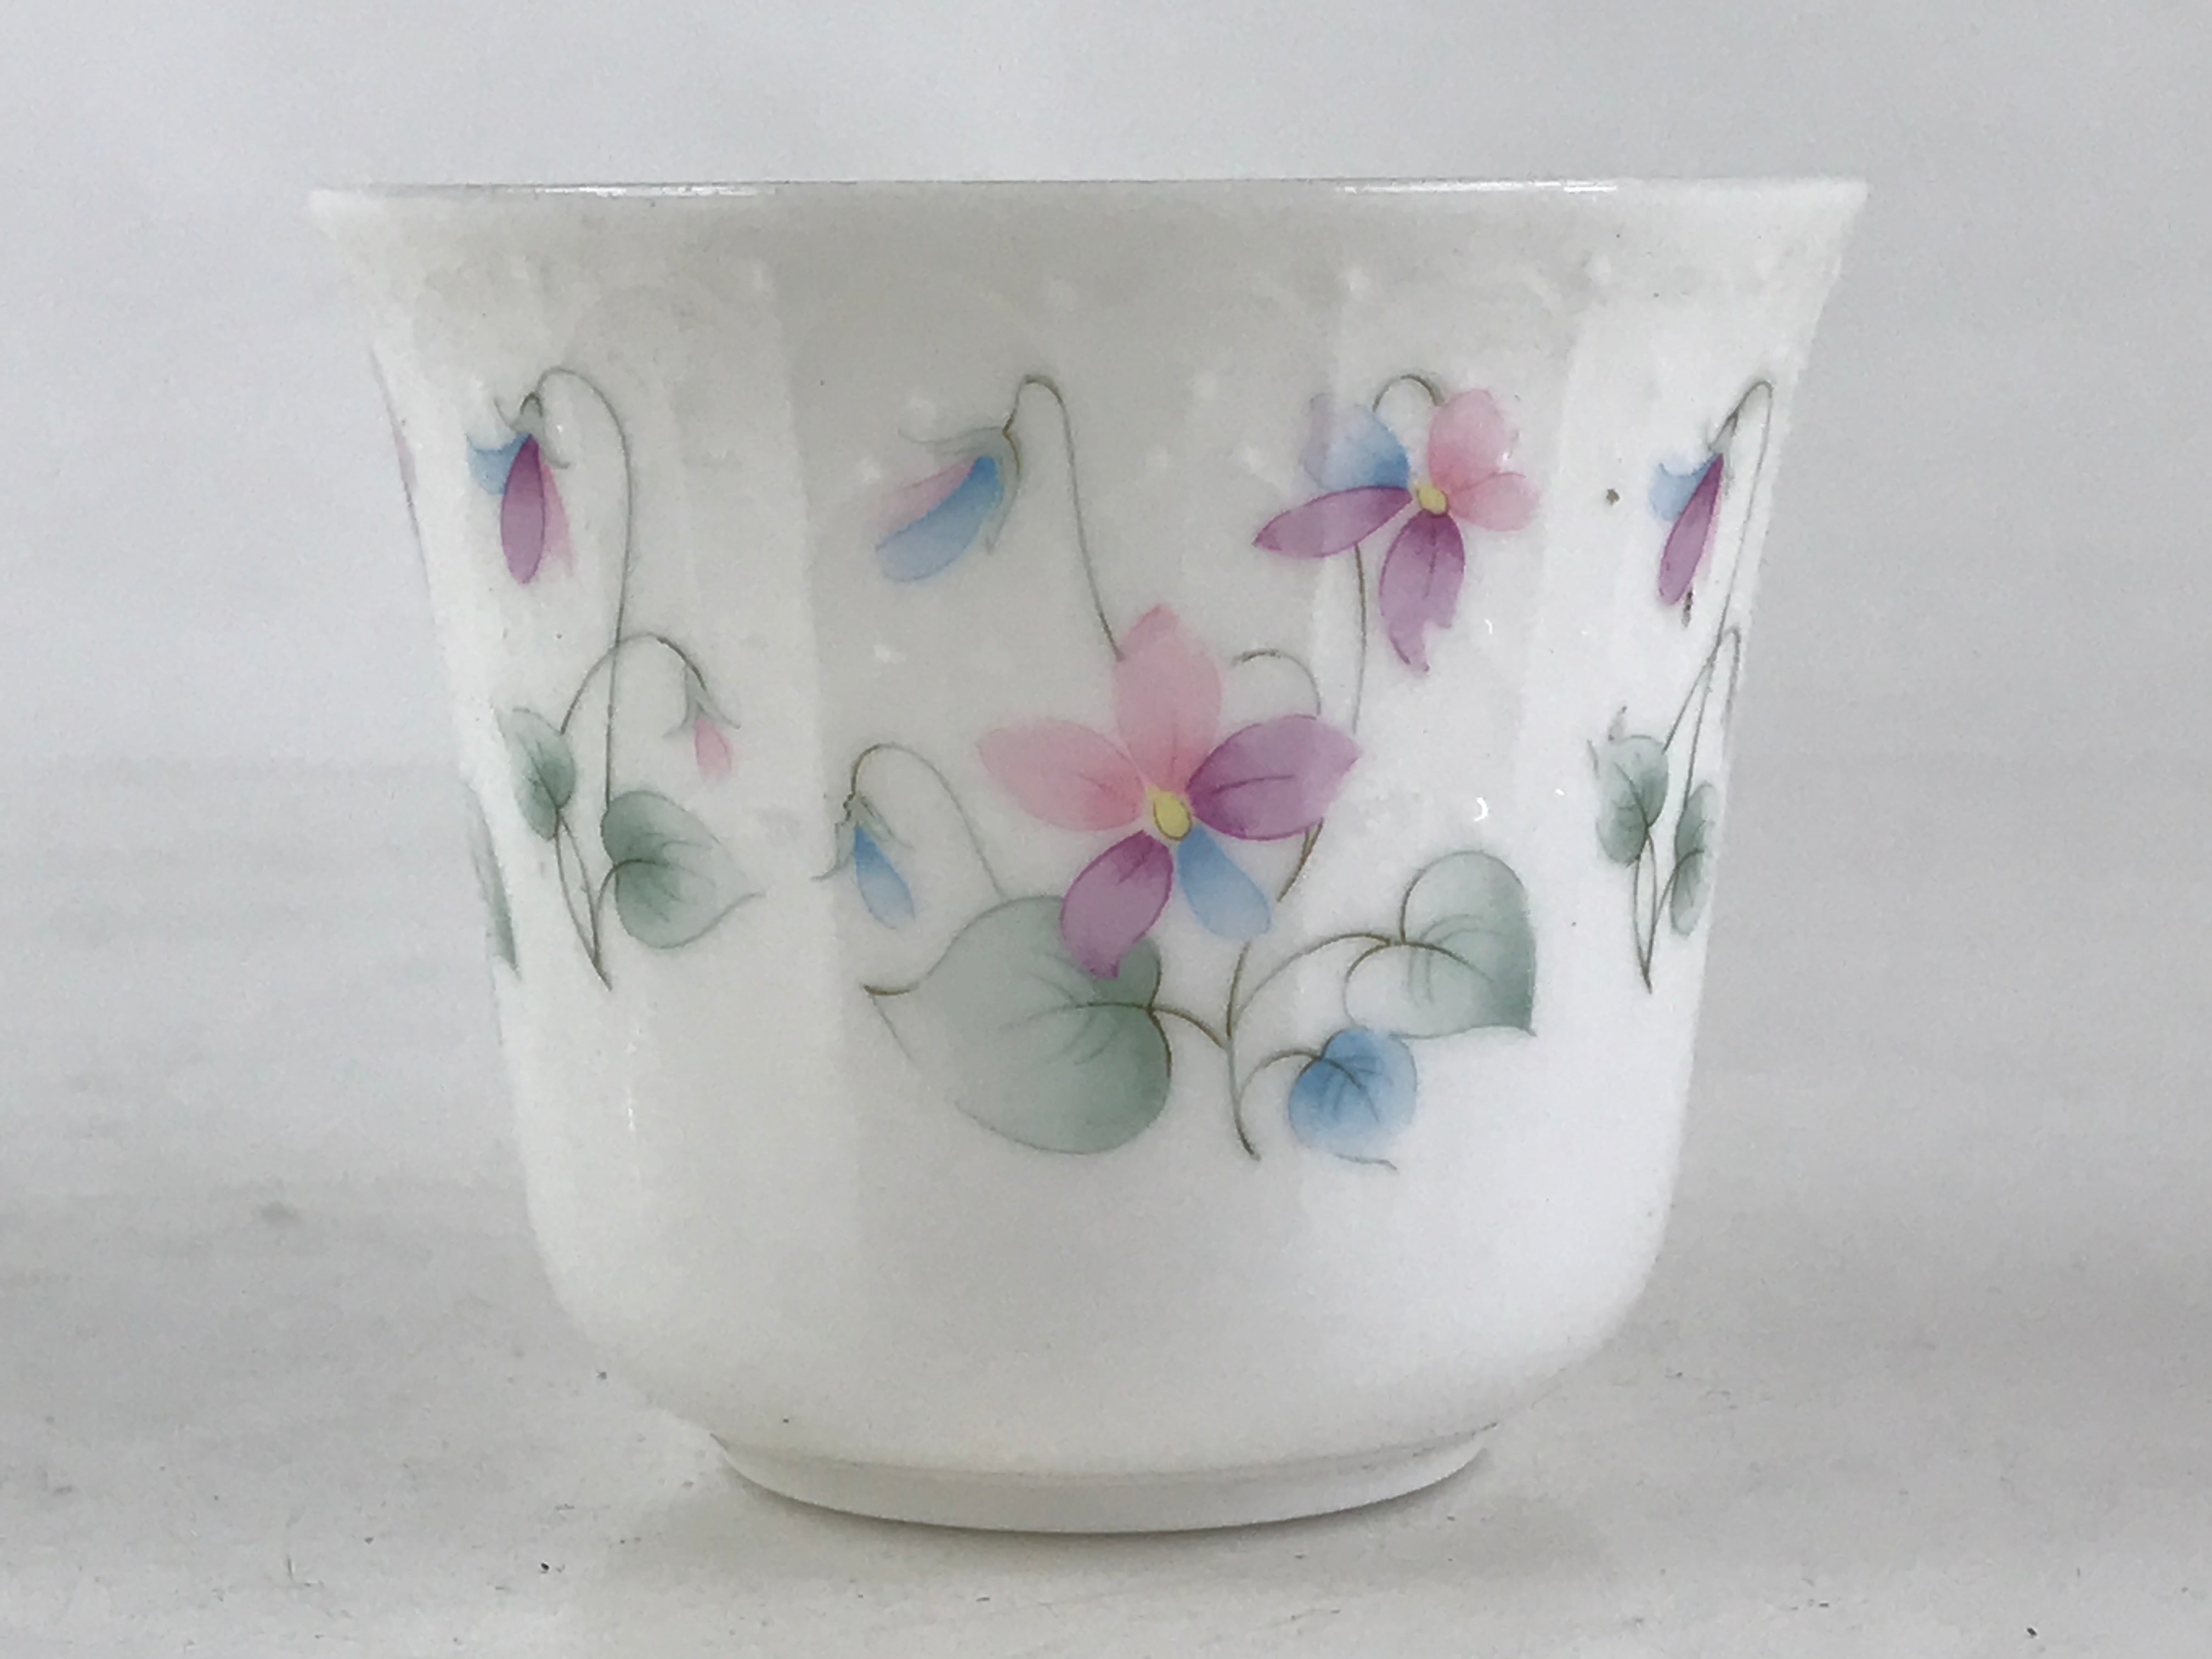 Japanese Porcelain Teacup Mug Saucer Set Vtg Nagoya Ceramic Japan Flower PY248